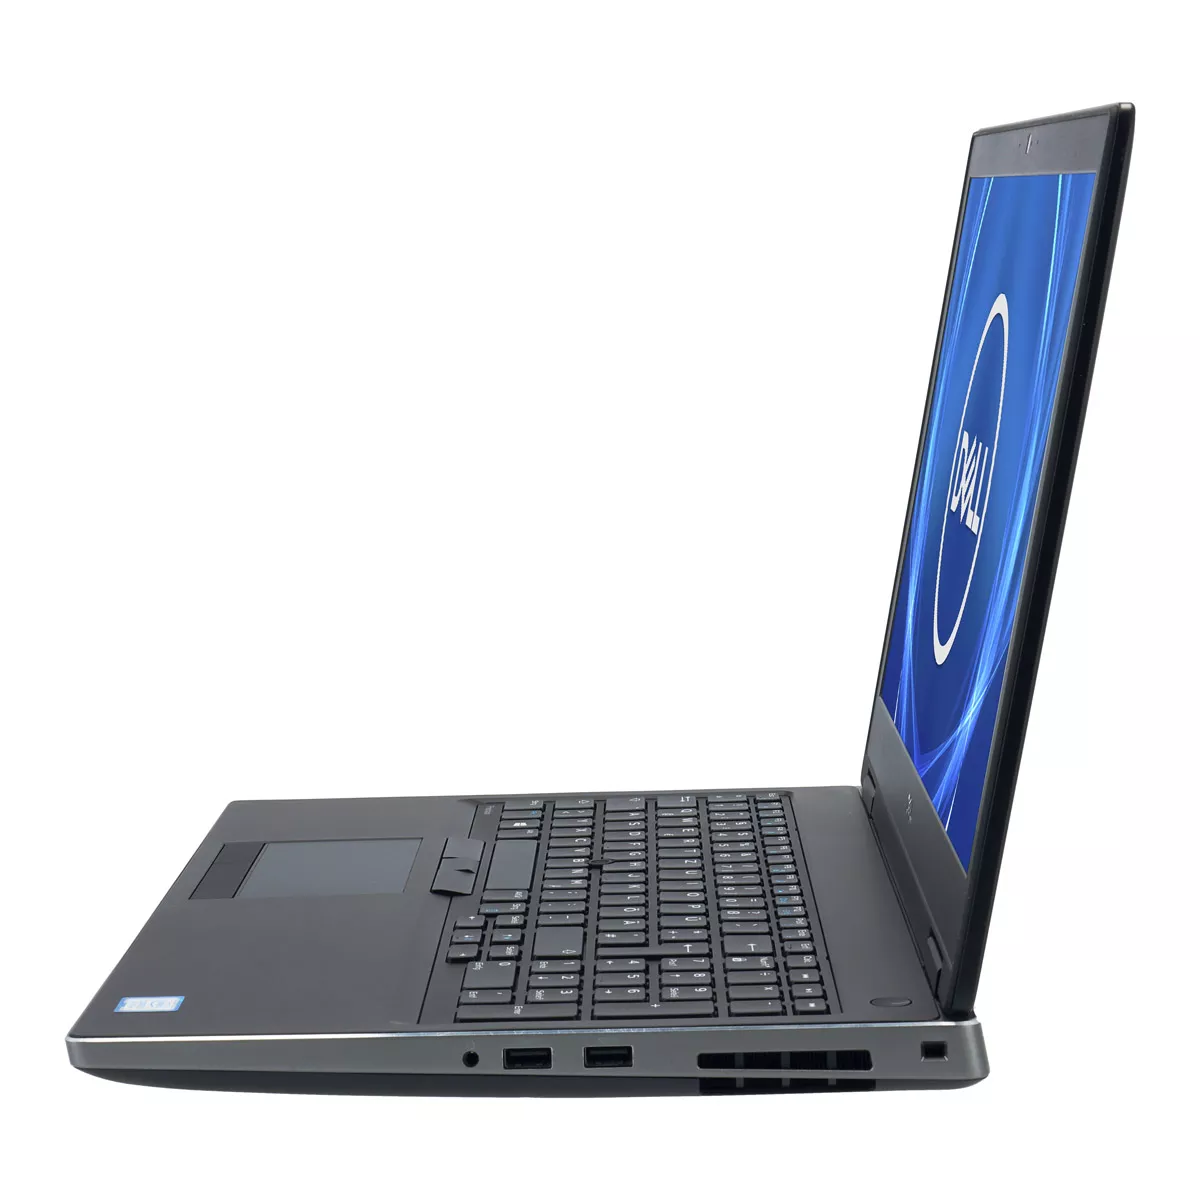 Dell Precision 7540 Core i9 9980HK nVidia Quadro T2000M 32 GB 240 GB M.2 nVME SSD Touch Webcam A+